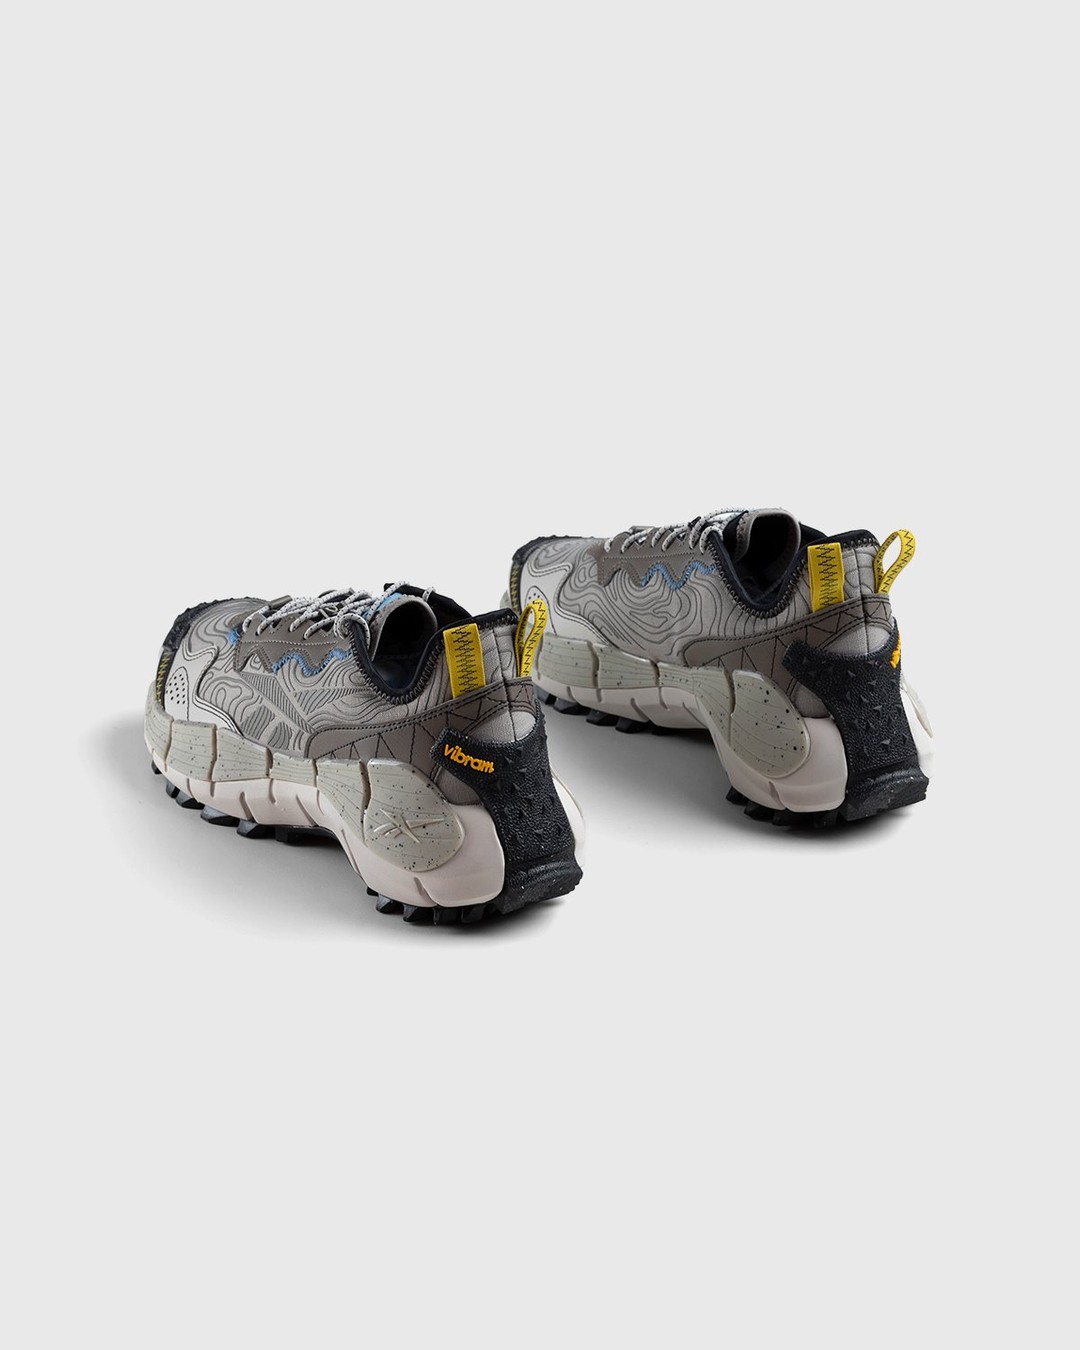 Reebok – Zig Kinetica II Edge Boulder Grey / Essential Blue / Sulfur Green - Low Top Sneakers - Grey - Image 4